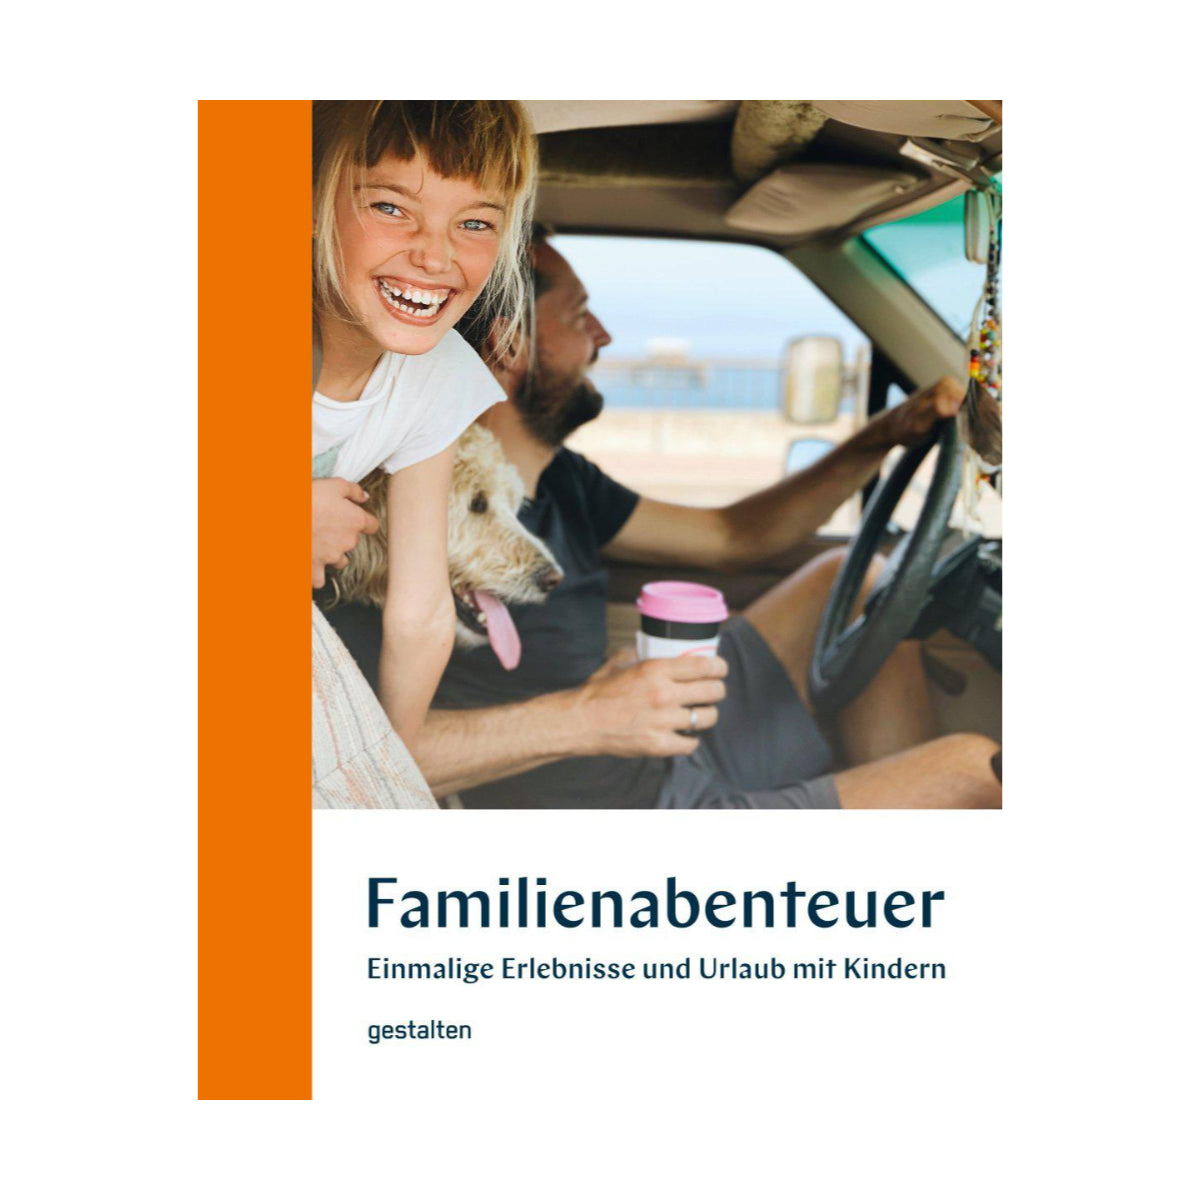 Gestalten Books – Buch FAMILIEN-ABENTEUER Einmalige Erlebnisse und Urlaub mit Kindern - WILDHOOD store